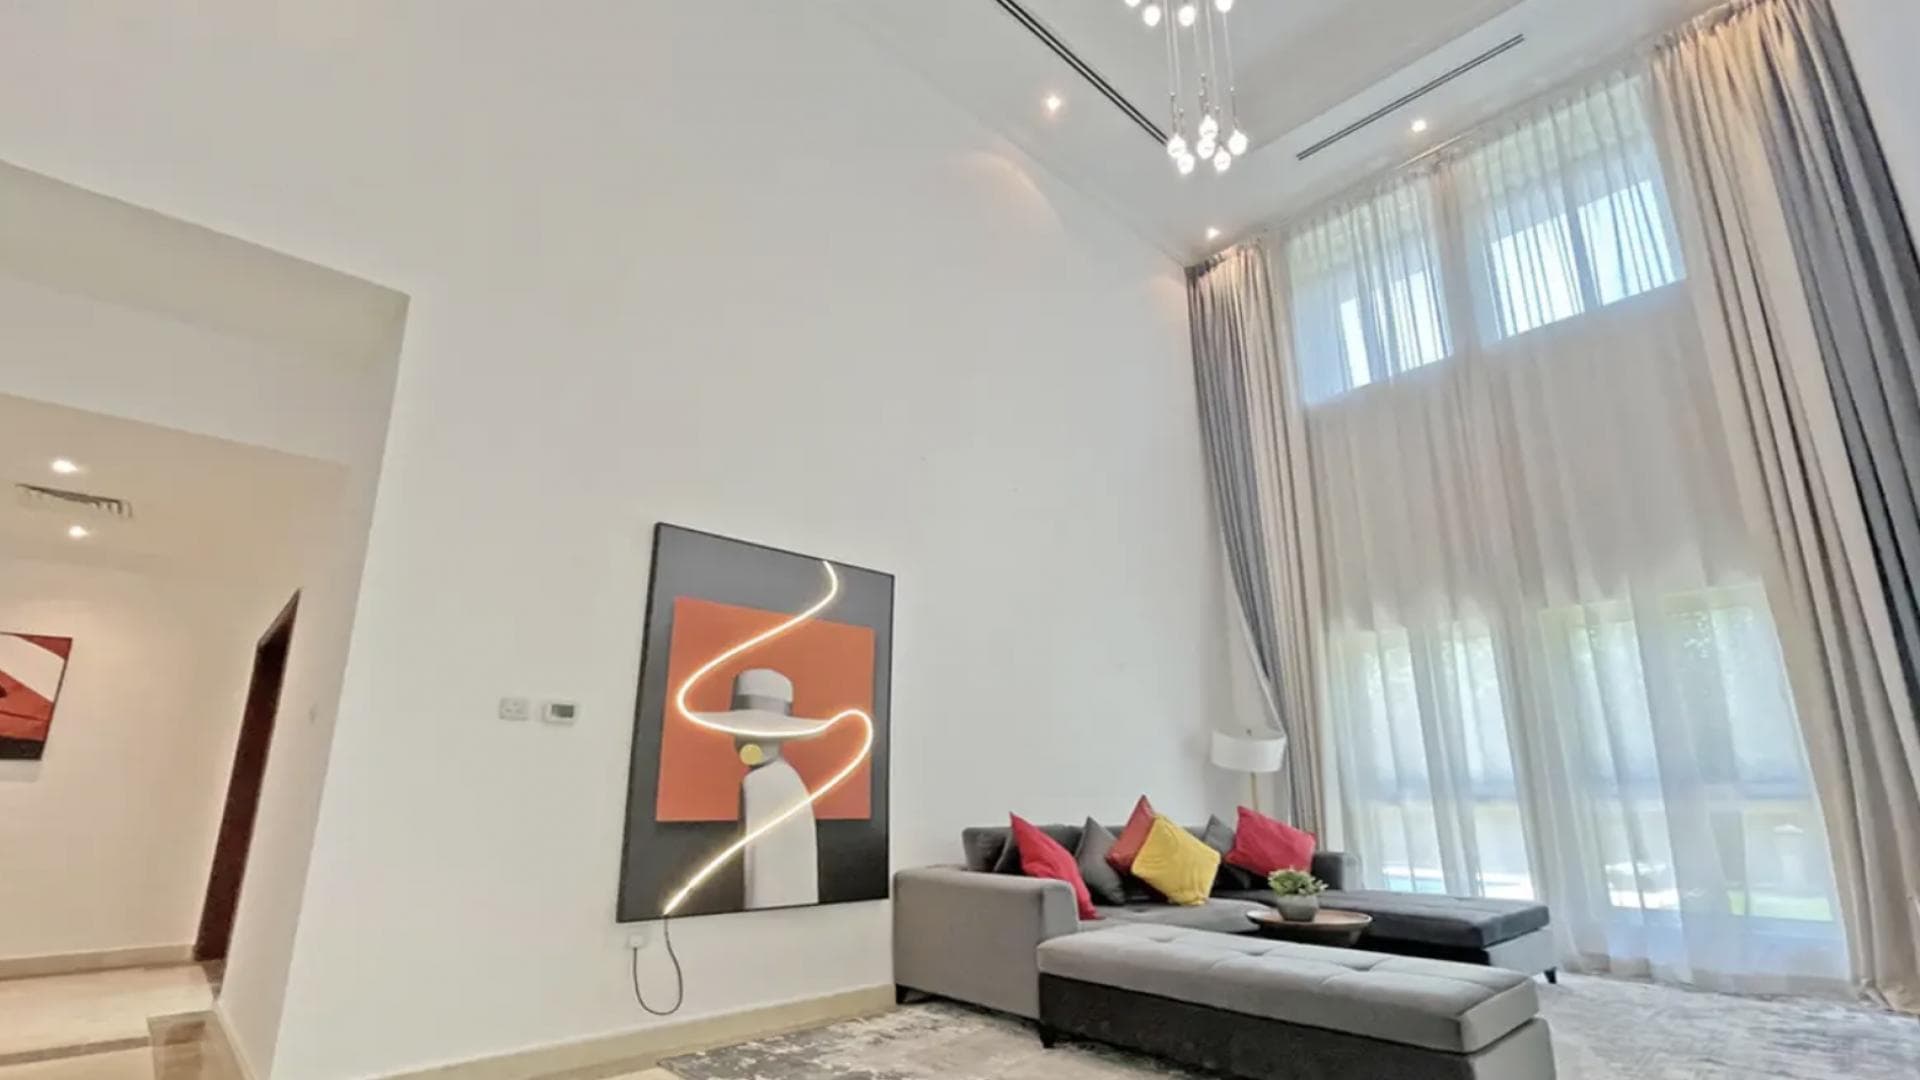 4 Bedroom Villa For Rent Al Thamam 13 Lp34806 9d677d4e518a780.png